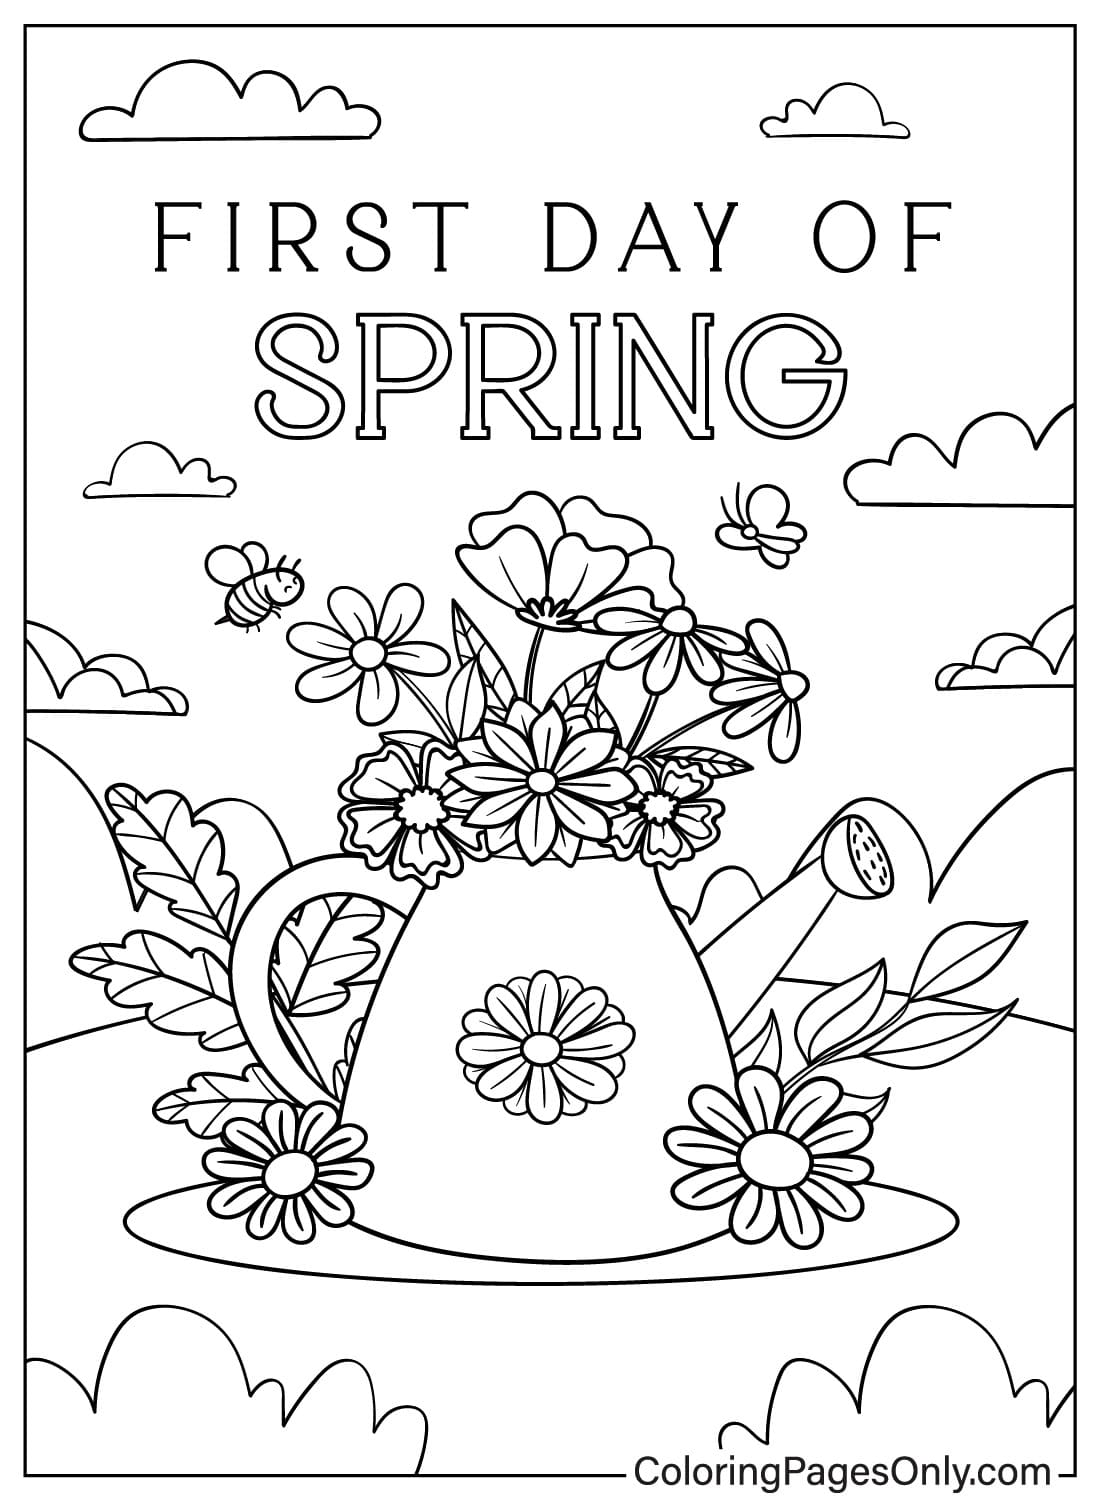 Первый день весны, чтобы раскрасить первый день весны